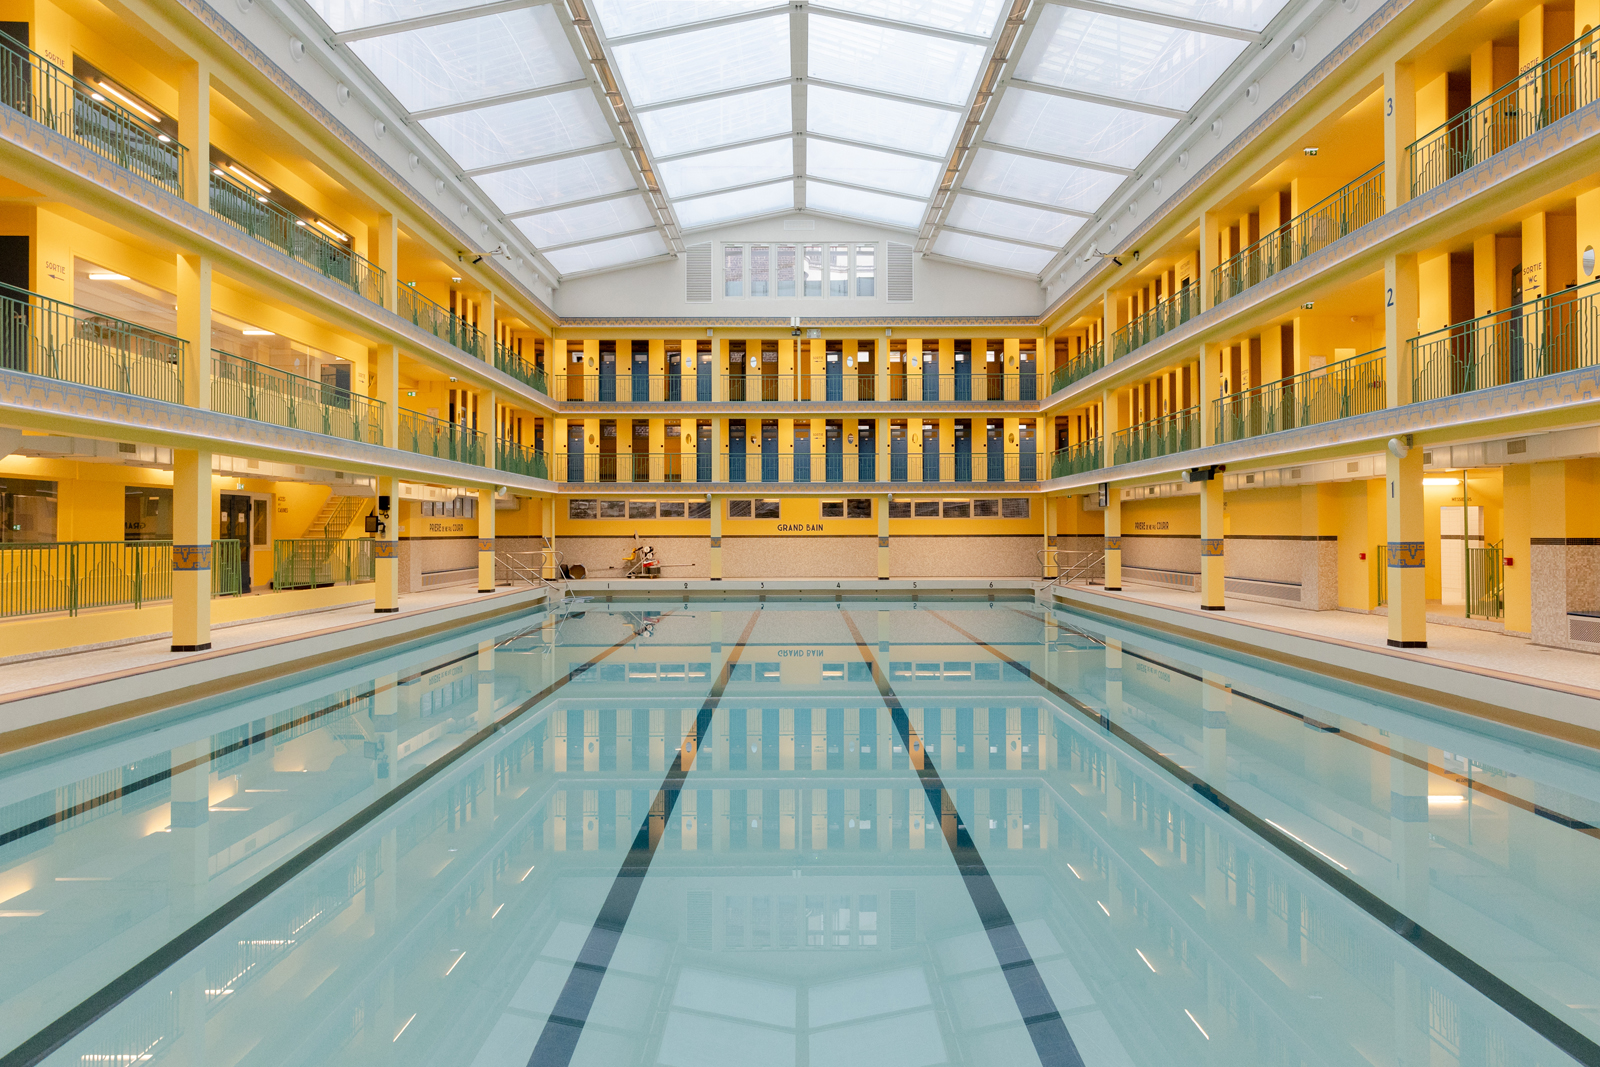 Après plus de de deux ans de travaux de rénovation, la piscine Pontoise a rouvert ses portes le 4 décembre 2023 dans le 5e. Construite par le grand architecte Lucien Pollet (piscine Molitor), elle fait partie des piscines mythiques créées dans les années 1930 à Paris.